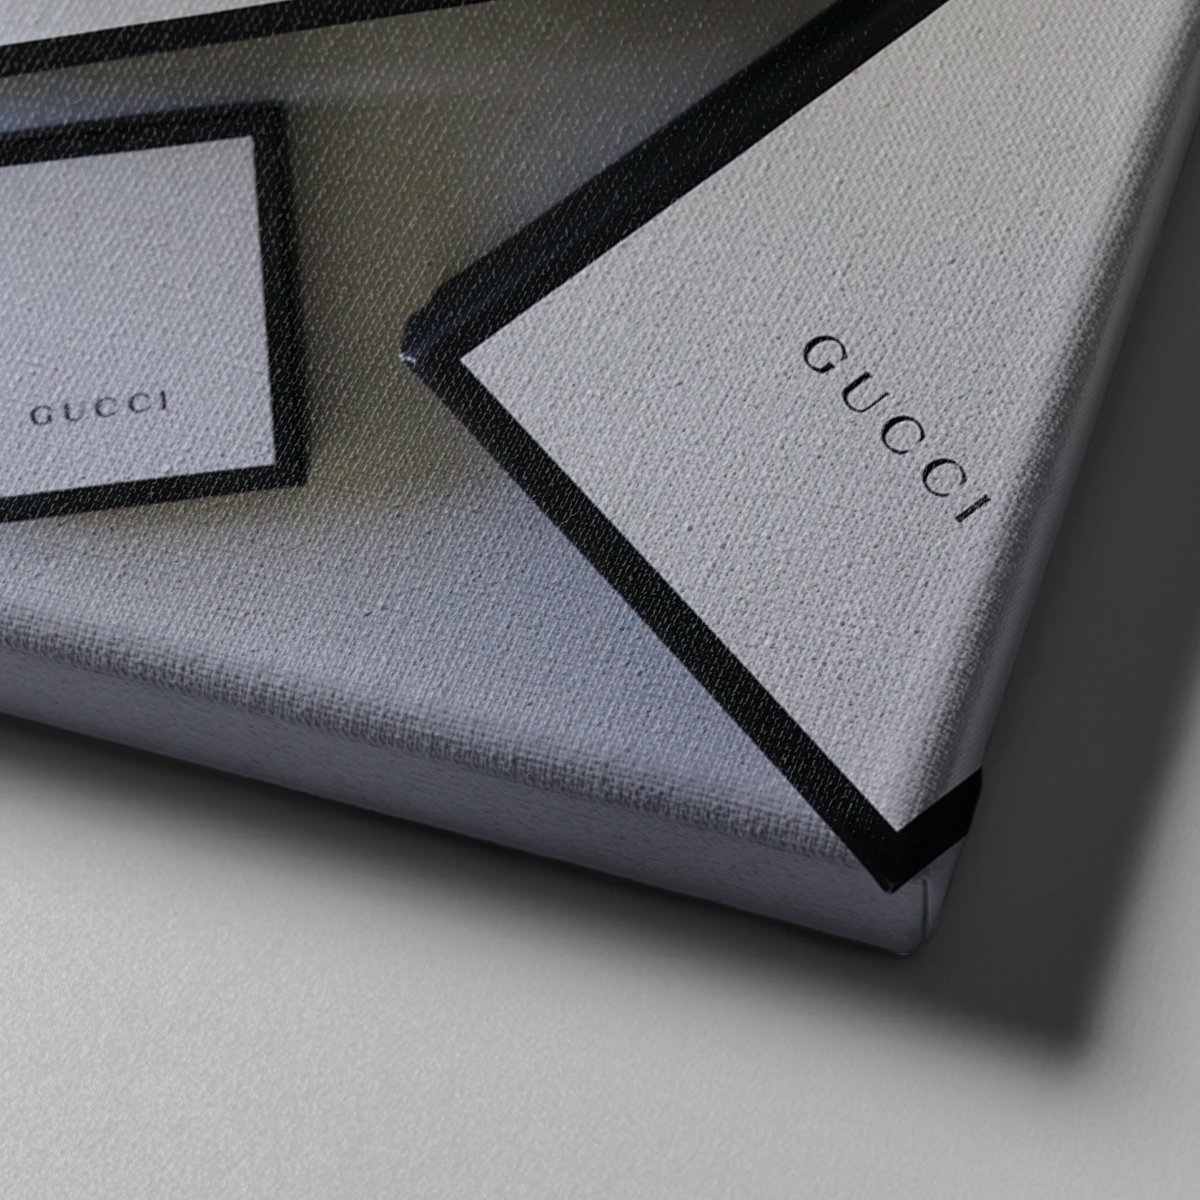 Market701 | Gucci Ayakkabı Kanvas Tablo - 